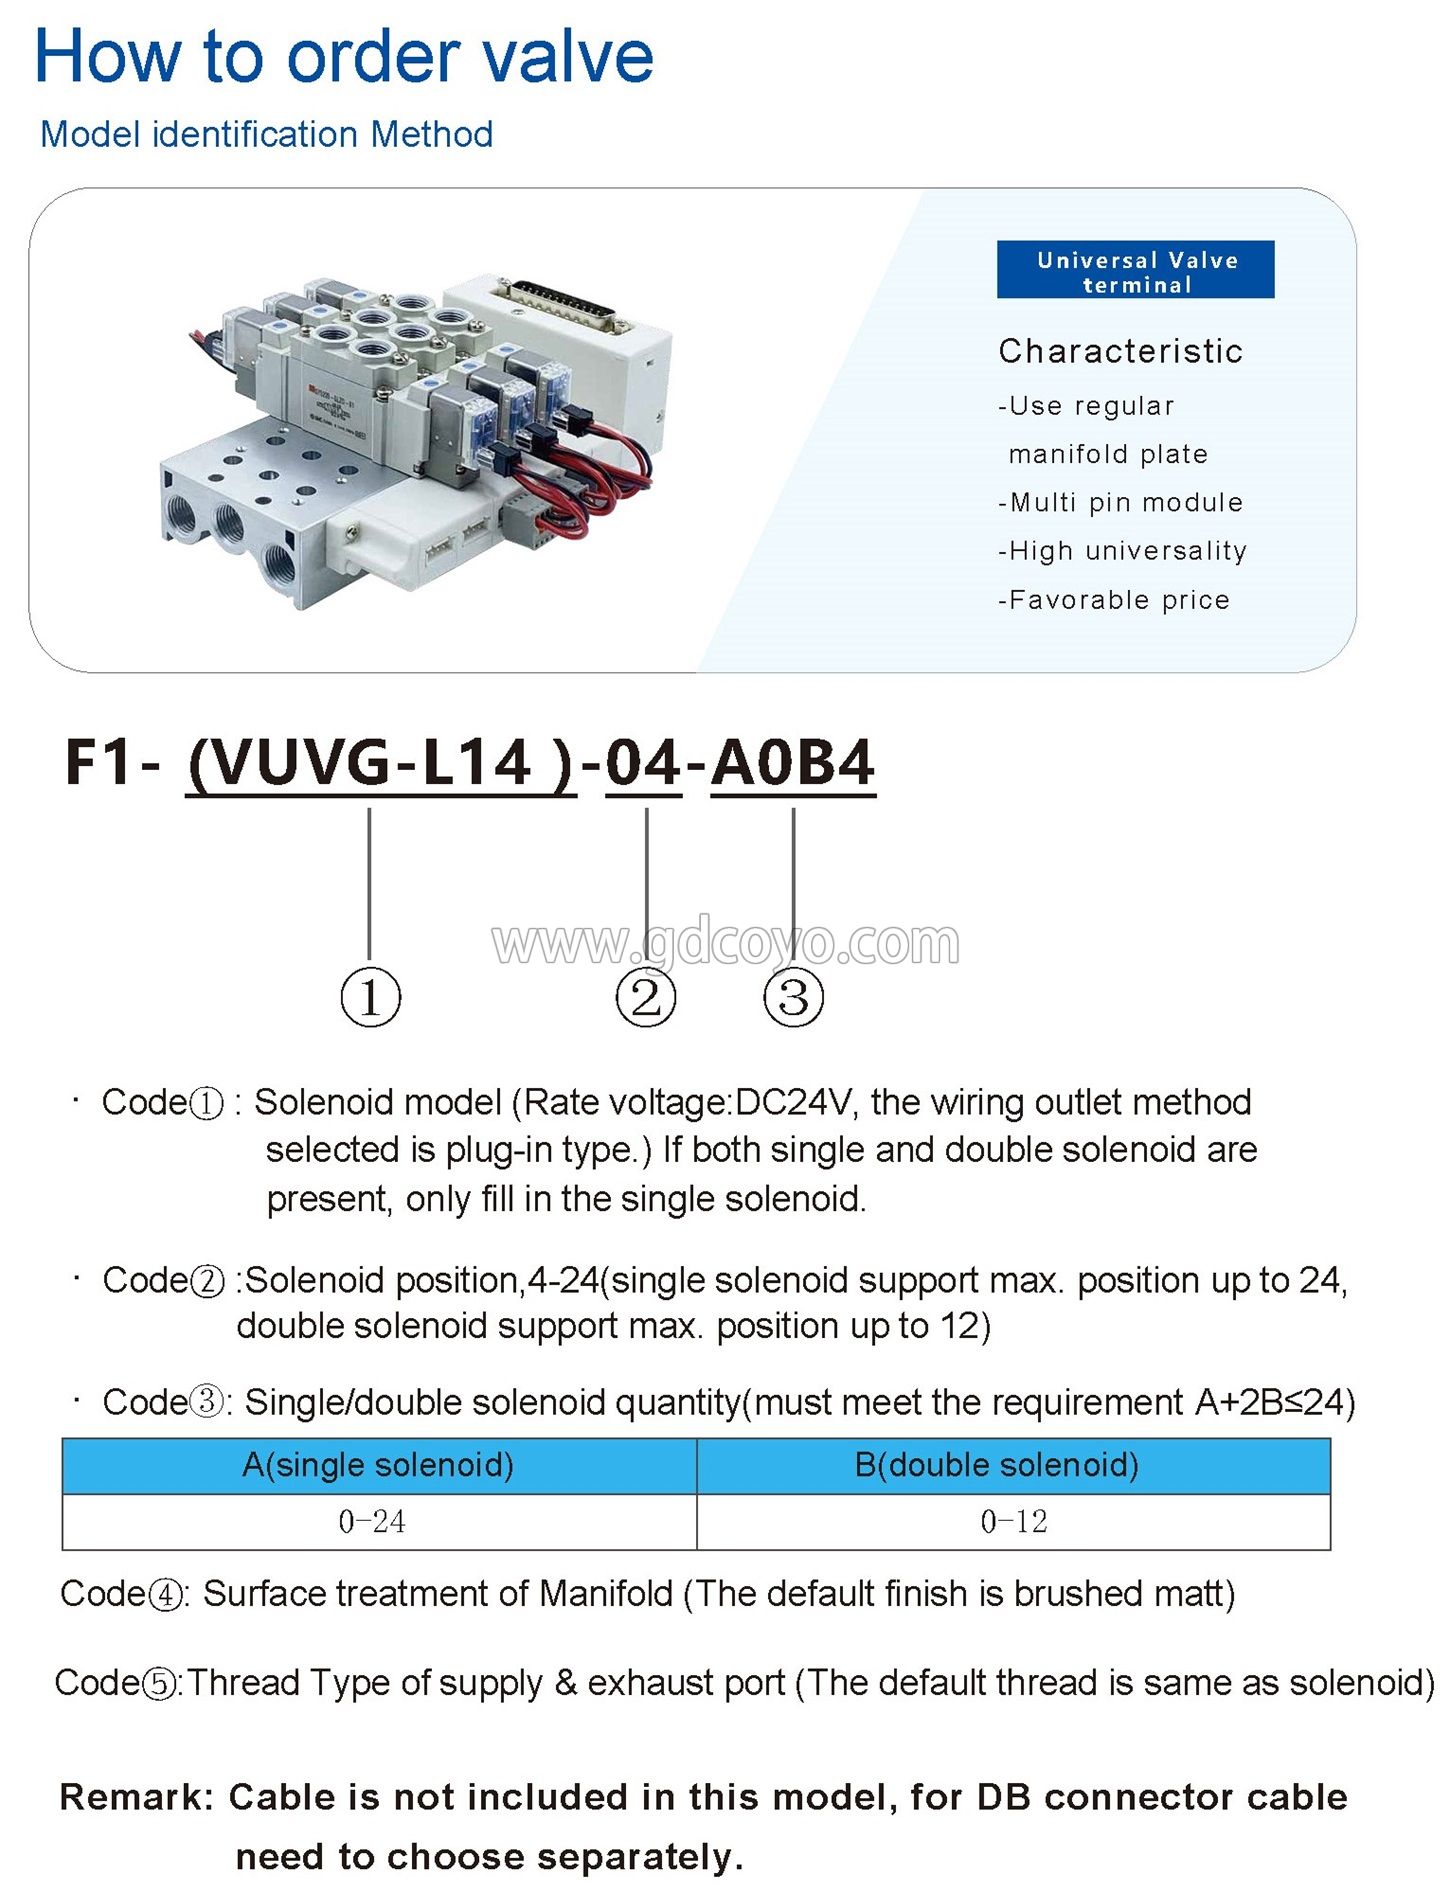 F1-VUVG-L14 Multi-Pin Plug Valve Terminal